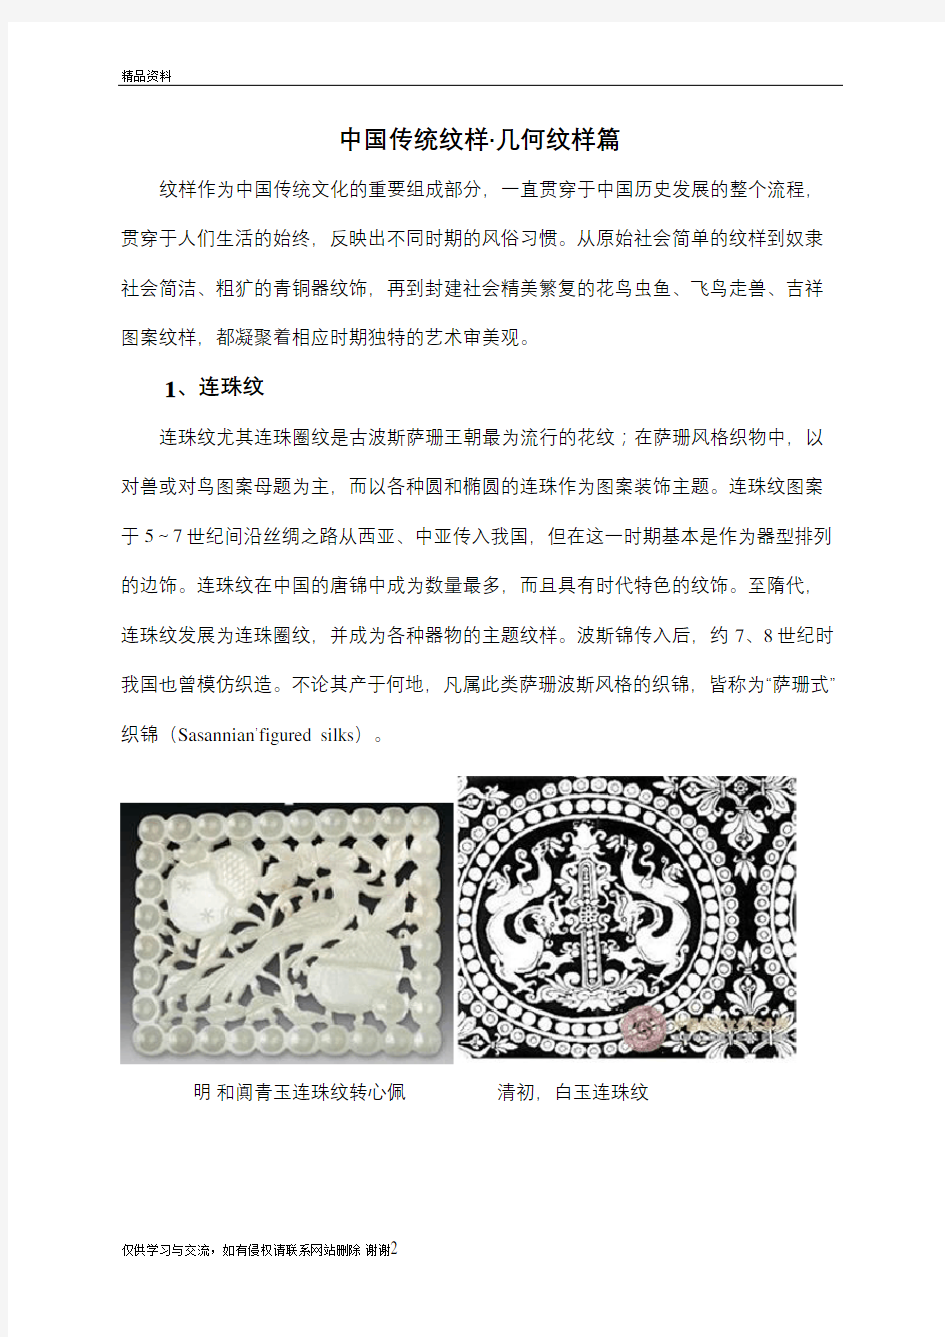 中国传统纹样教学文稿